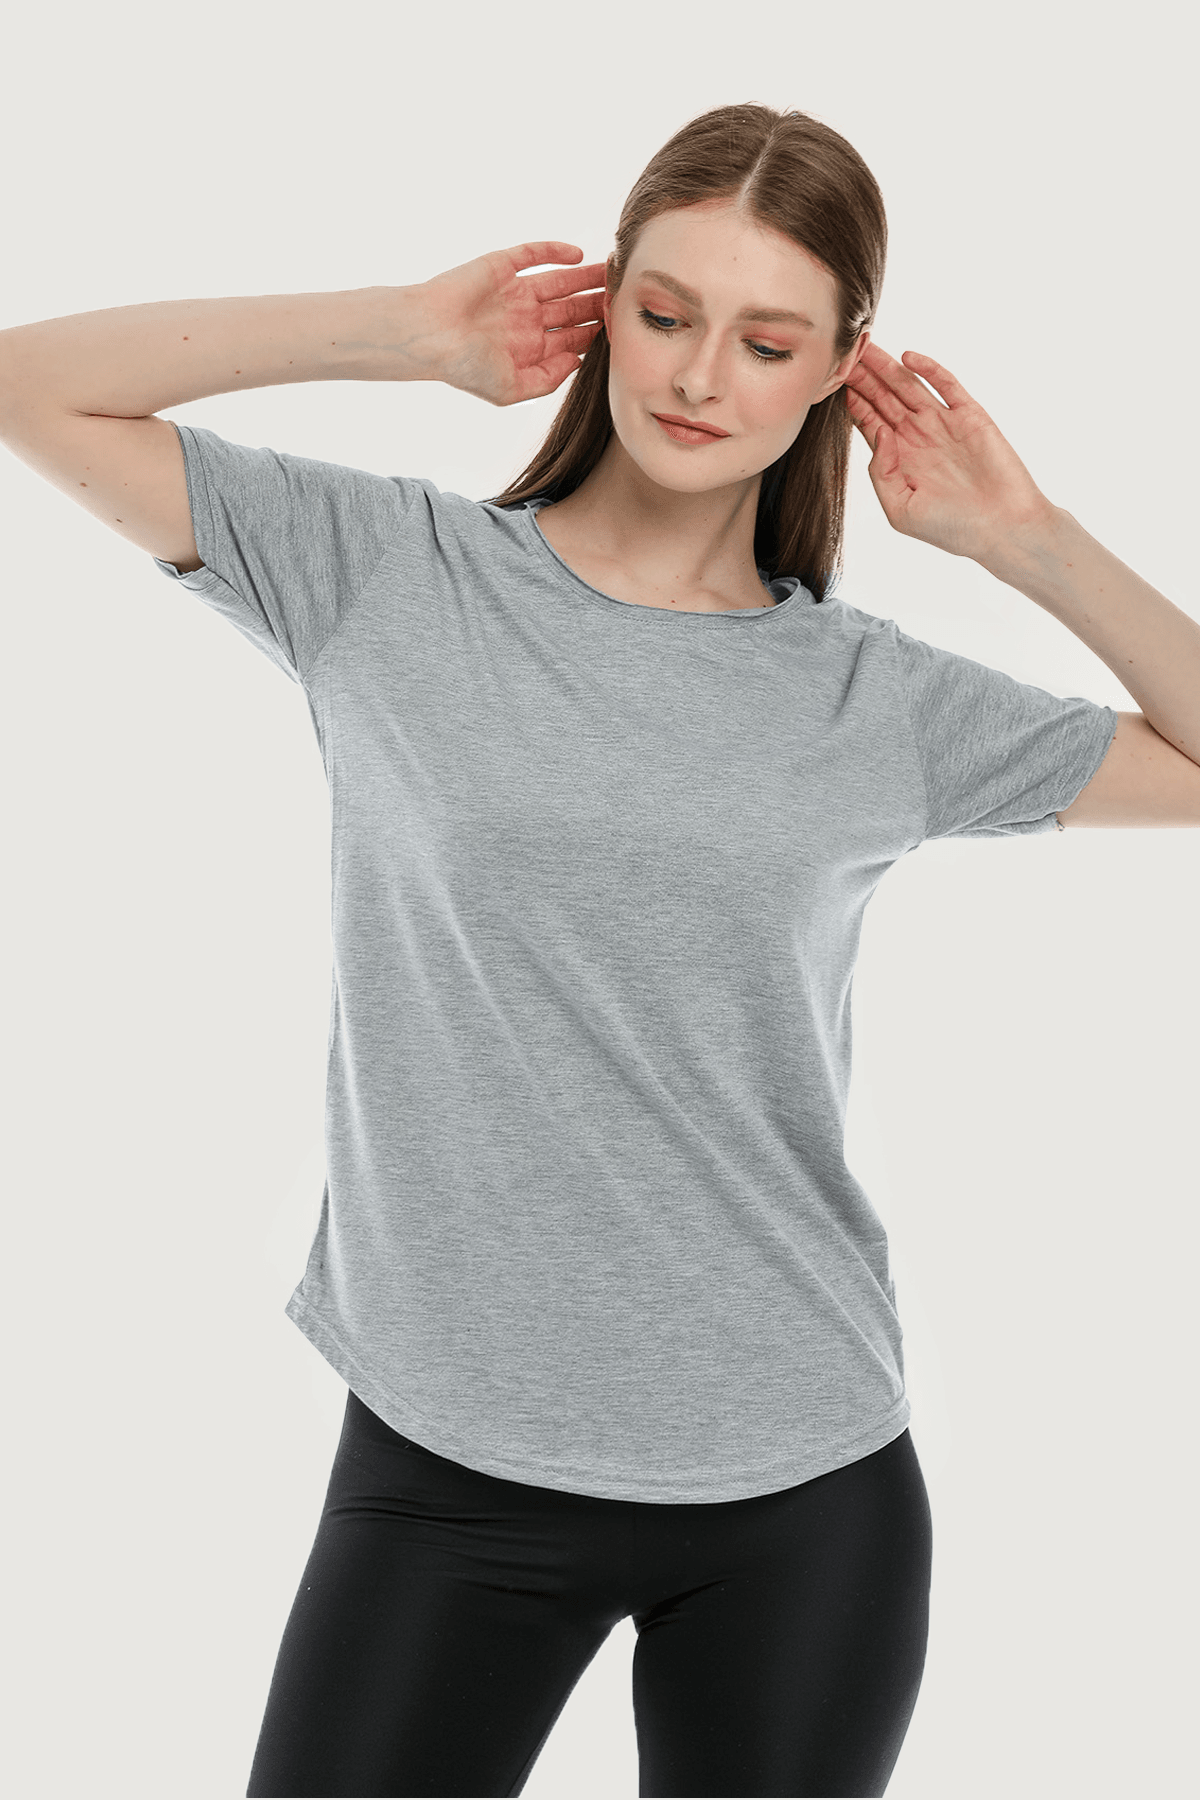 Camiseta básica holgada y cómoda para mujer - Gris